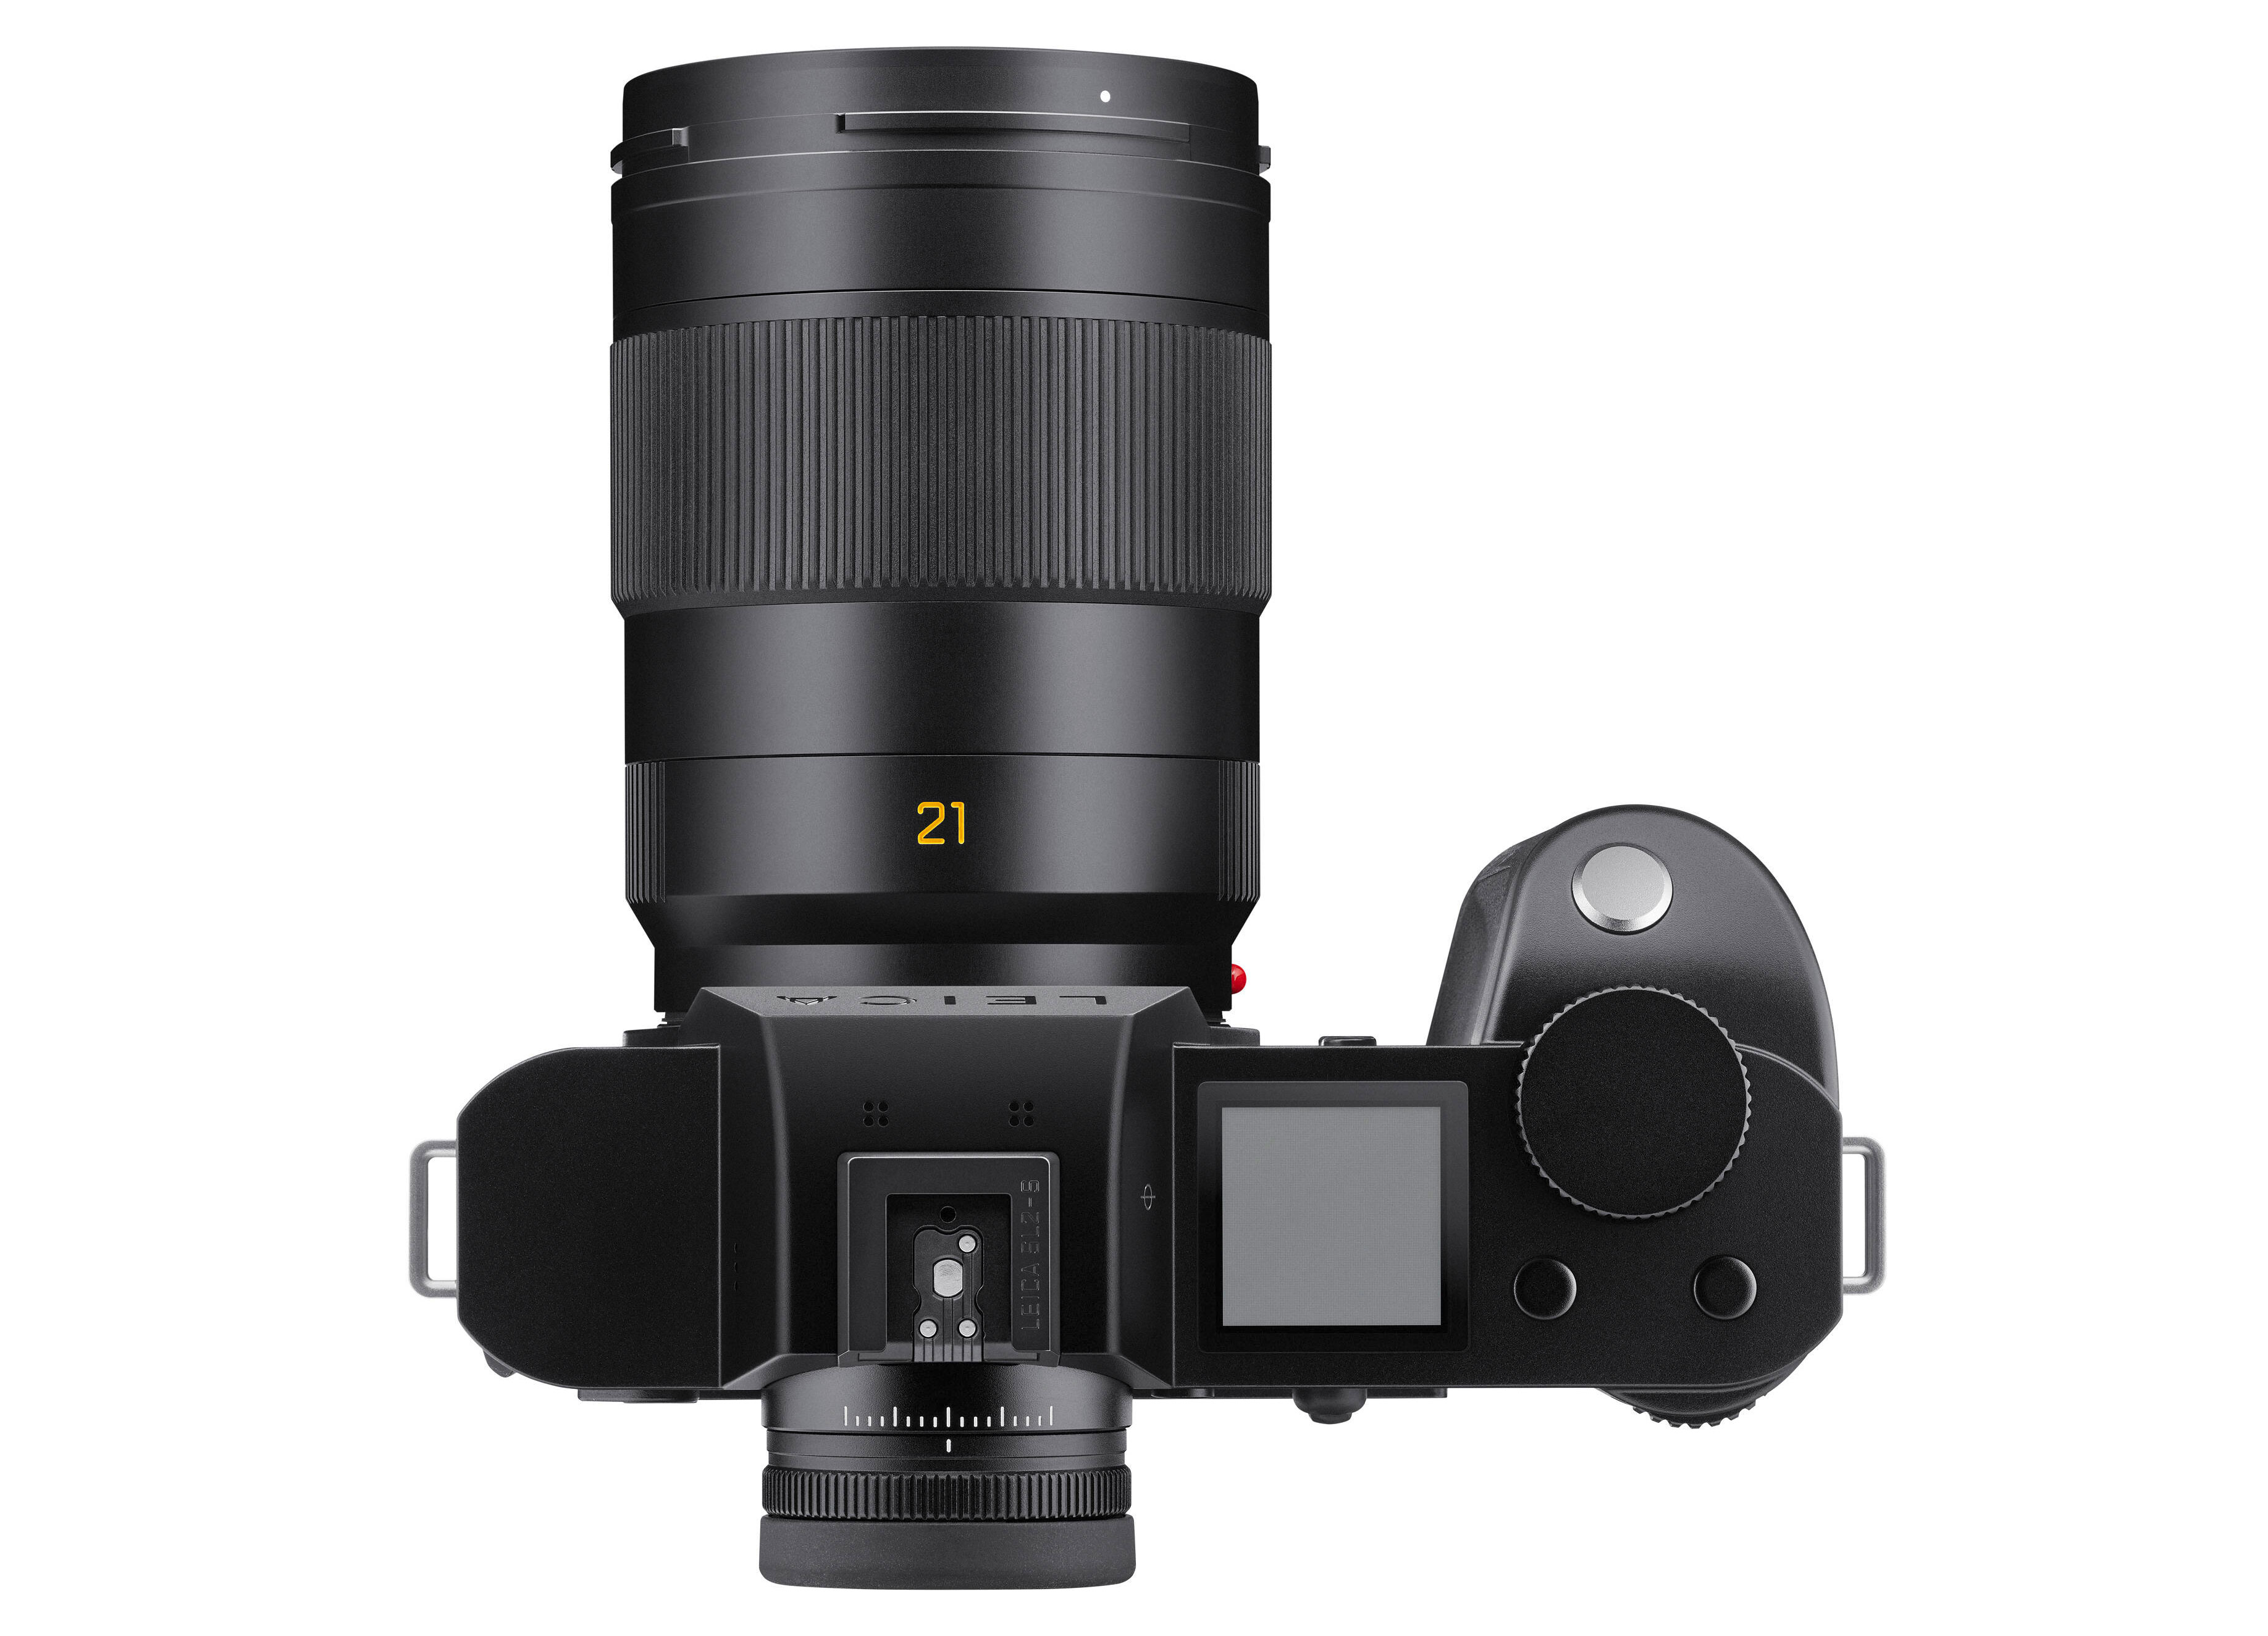 Leica Super-APO-Summicron-SL 21mm f/2 ASPH